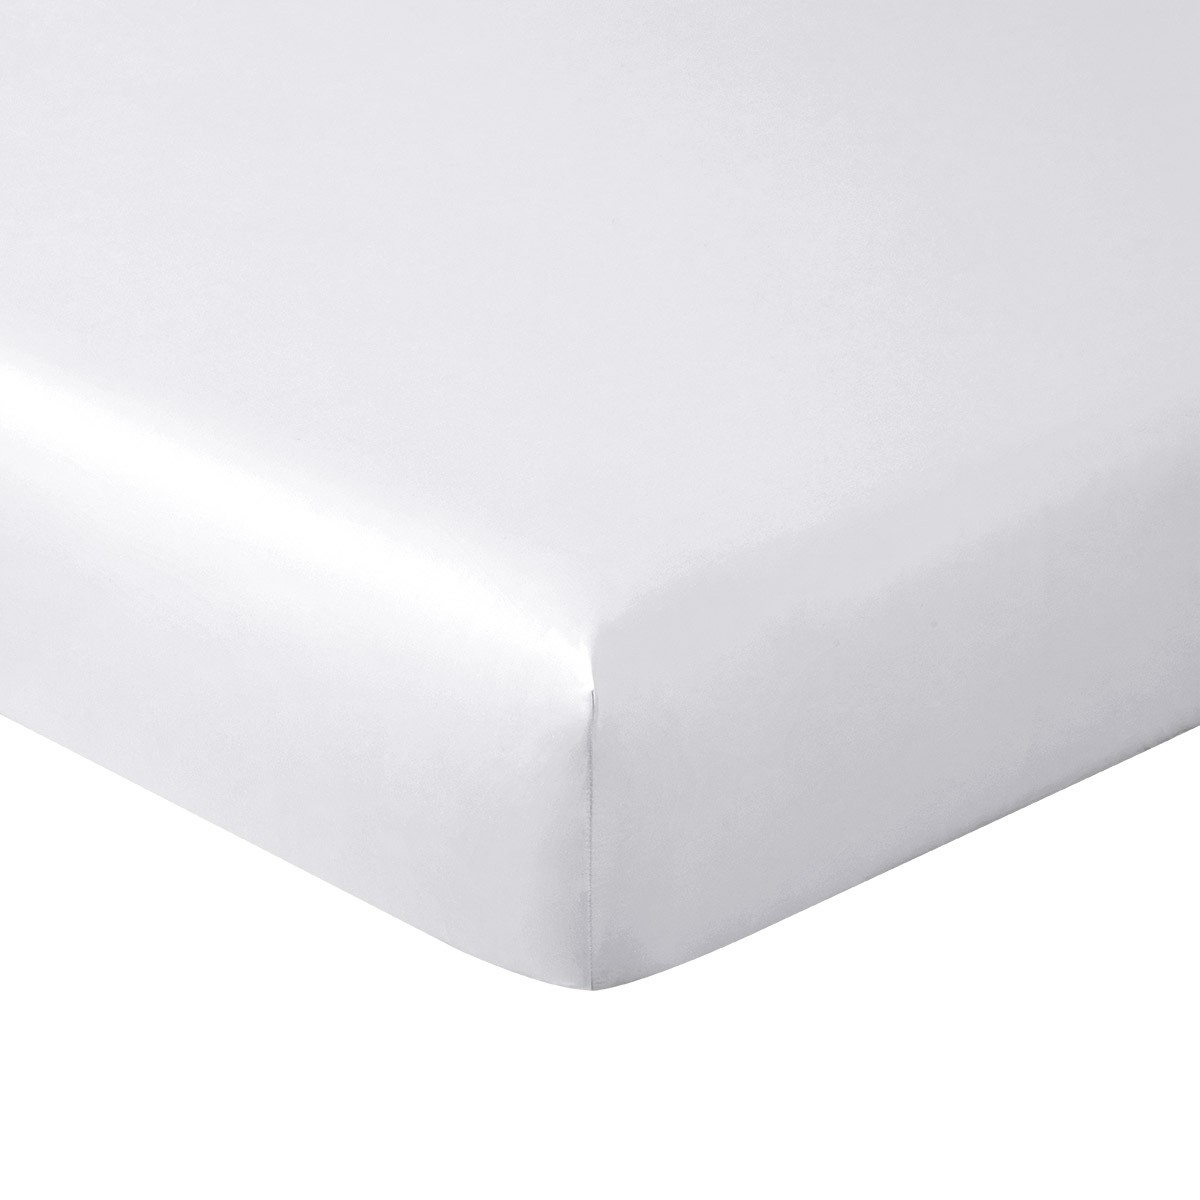 Adagio Quilted Coverlet - Lavish Bedding Choice